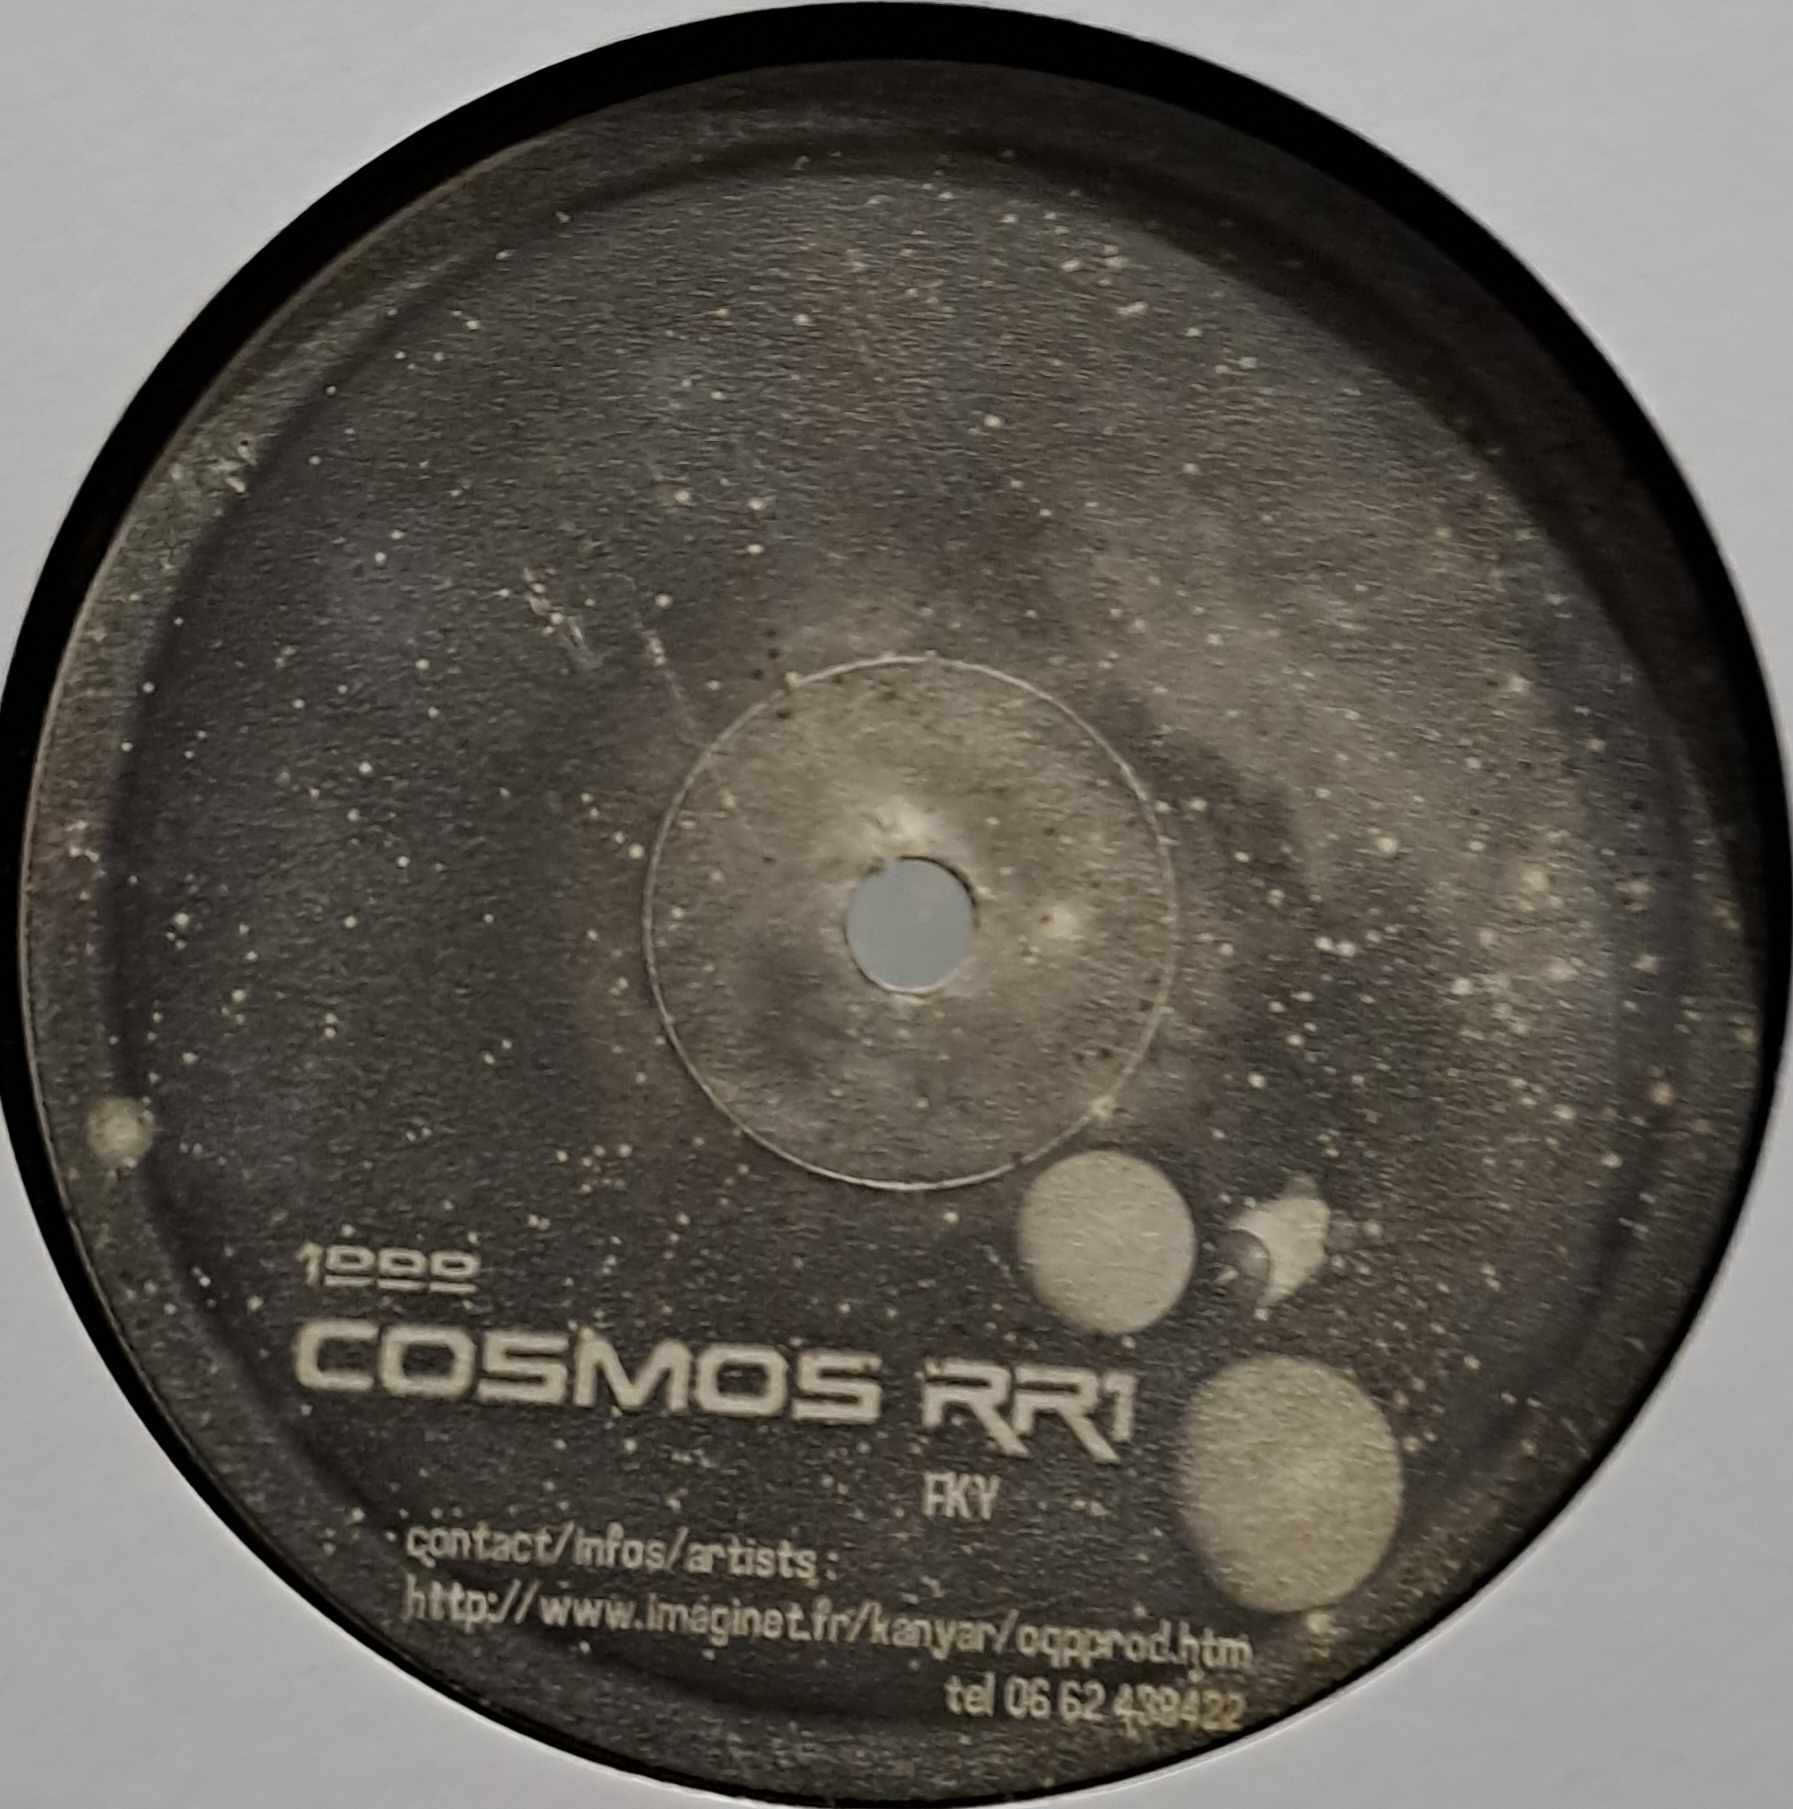 Okupe 06 (Cosmos RR1) - vinyle freetekno